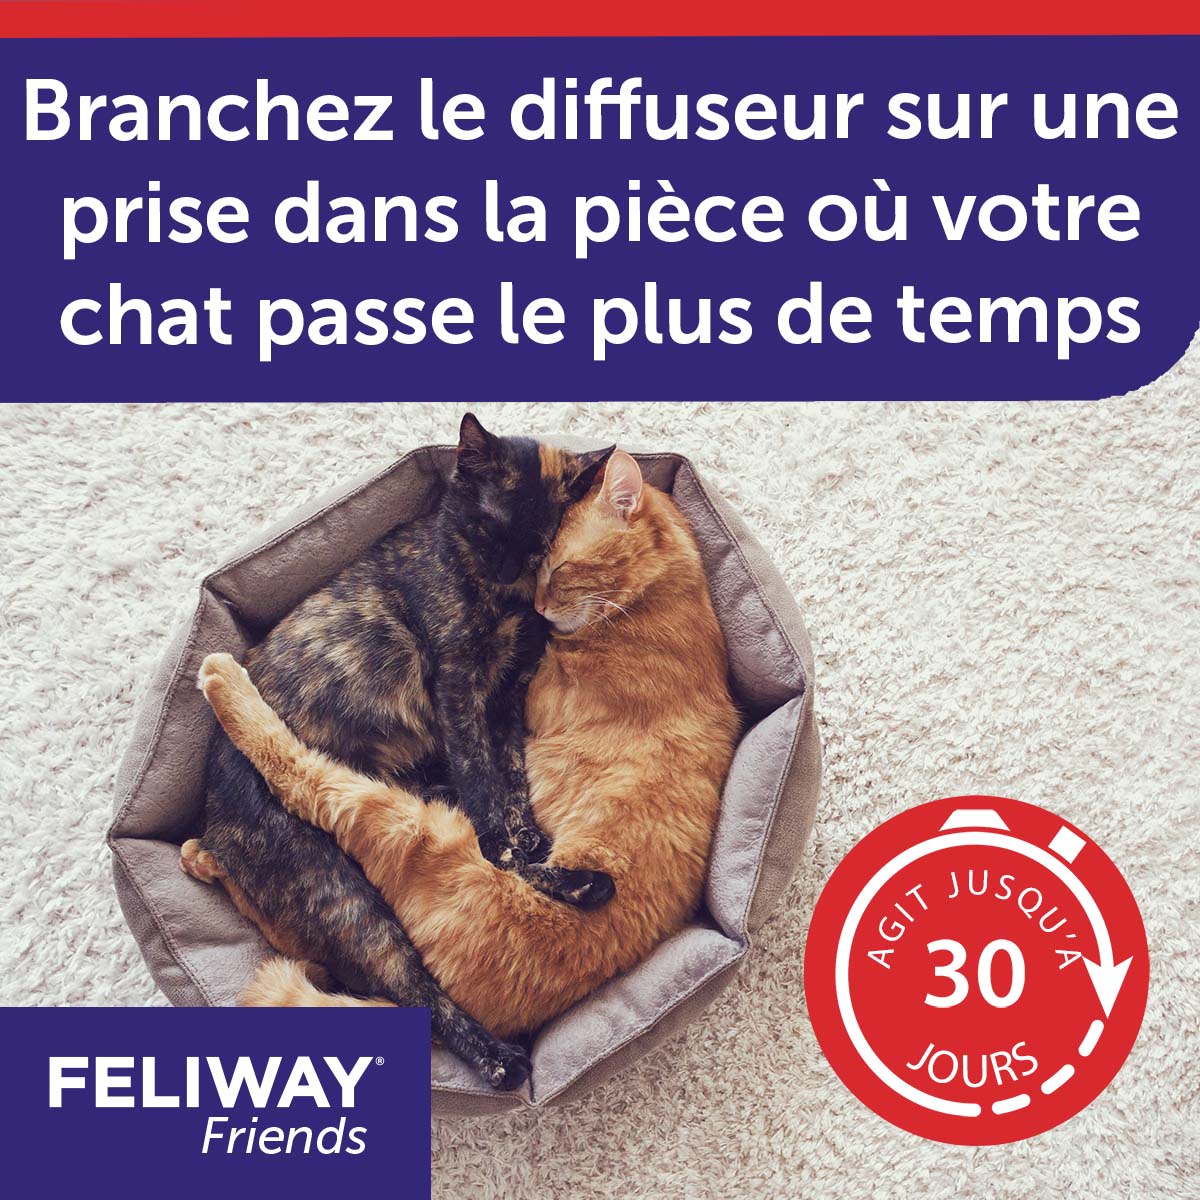 Feliway Friends - Diffuseur + Recharge 30J pour le Stress des